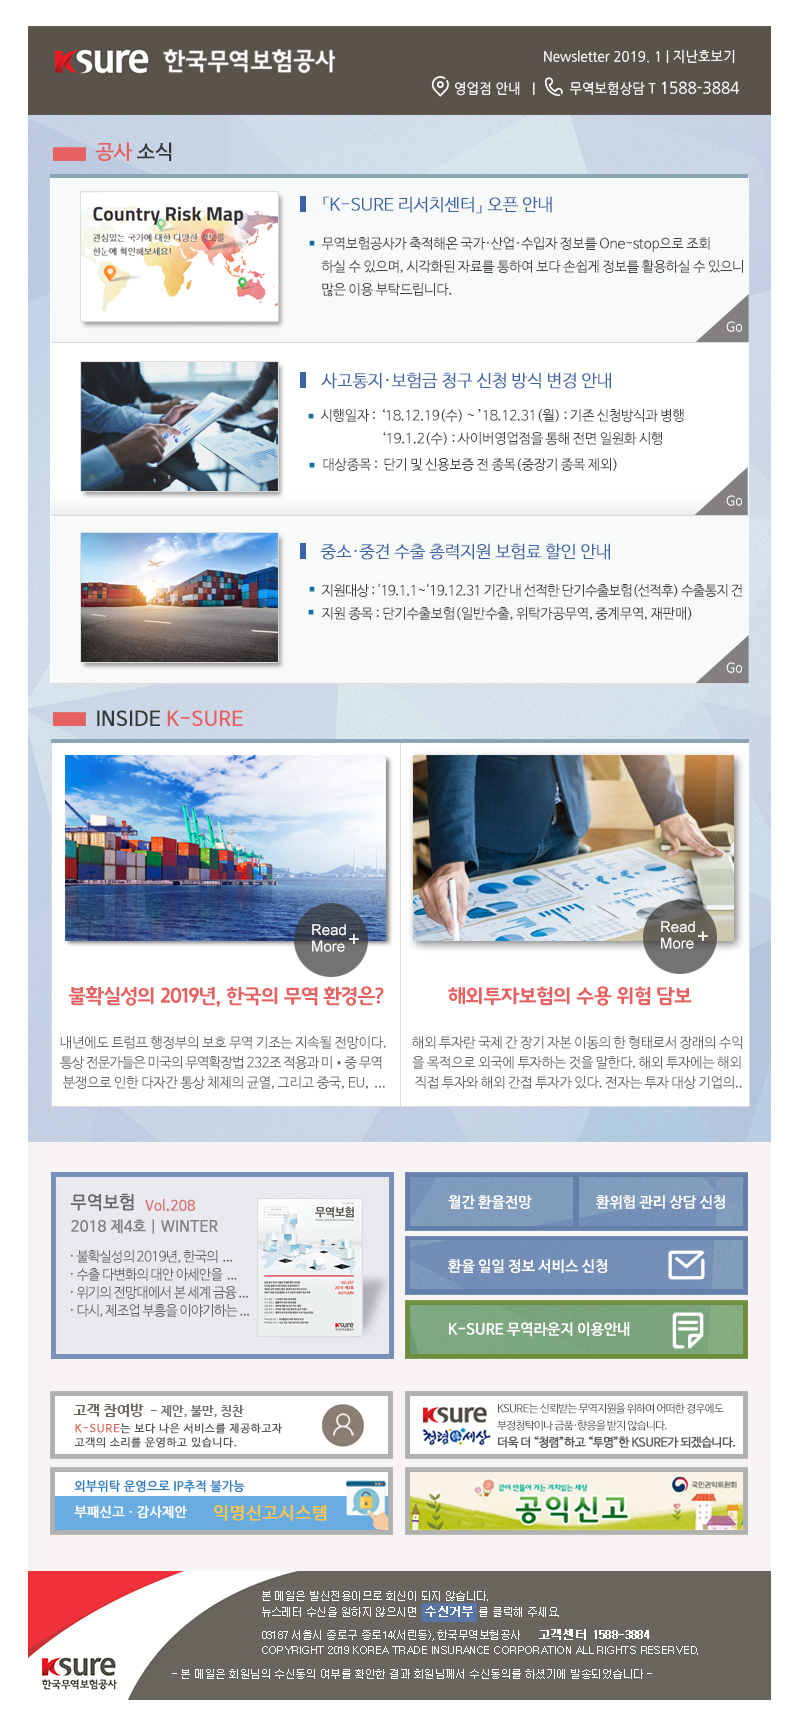 한국무역보험공사에서 보내드리는 2018년 11월 뉴스레터입니다.